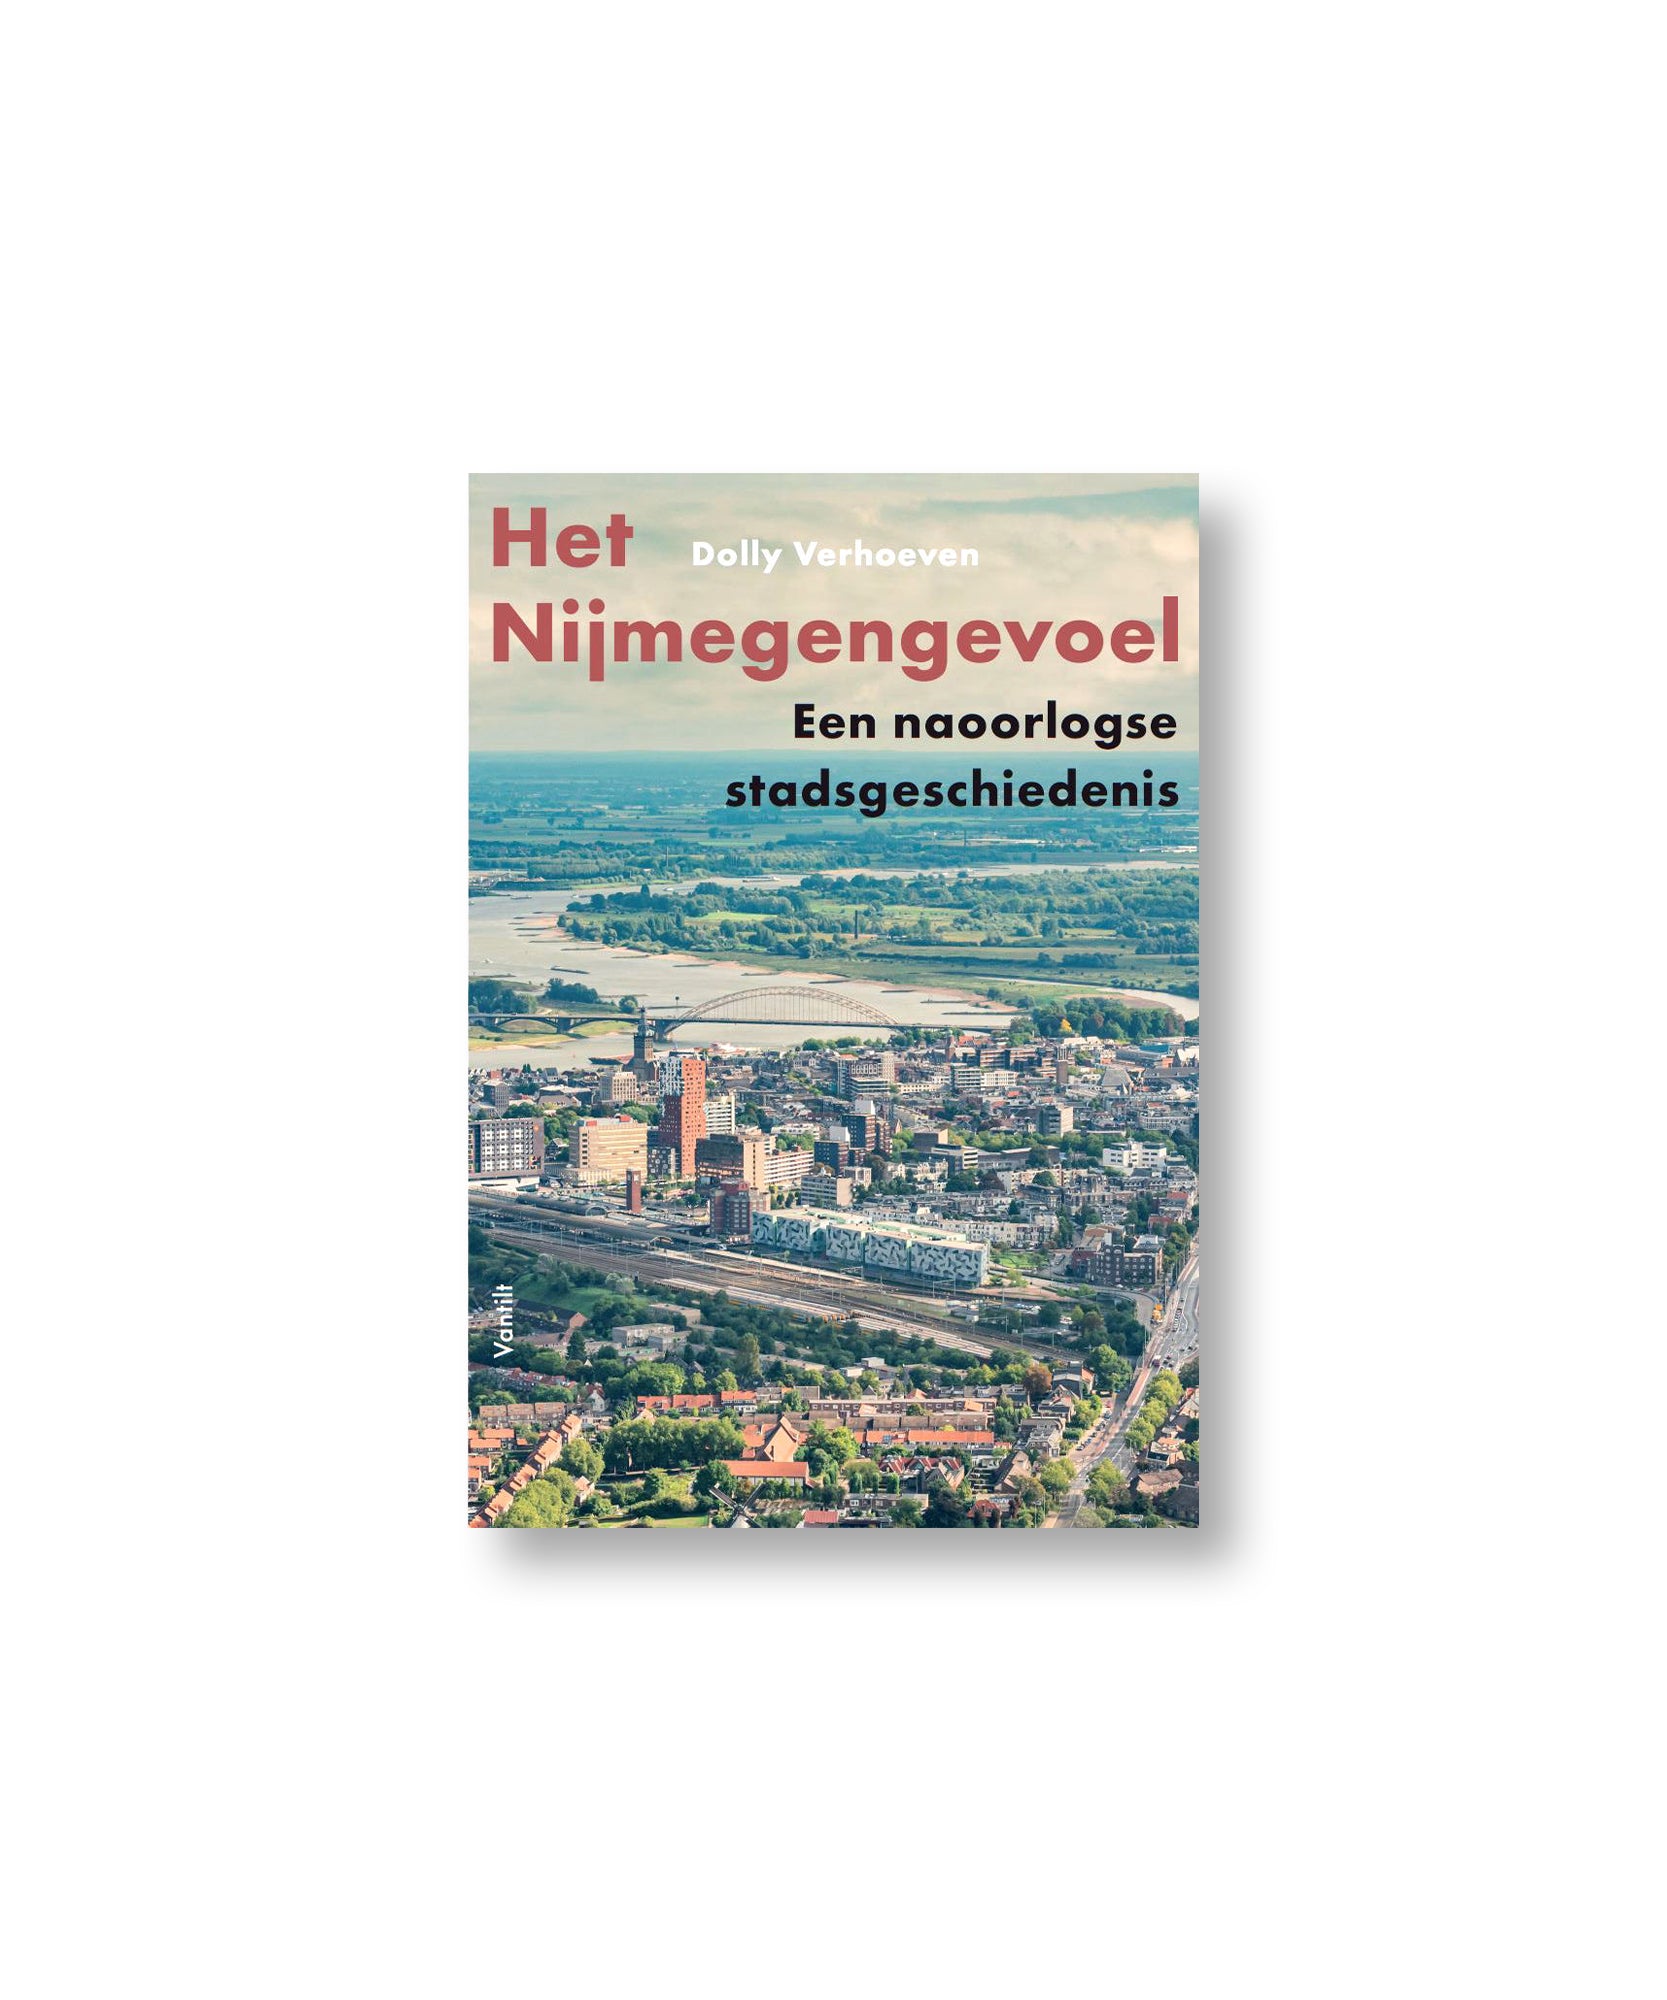 Boek Het Nijmegengevoel Dolly Verhoeven ilovenijmegen.nl